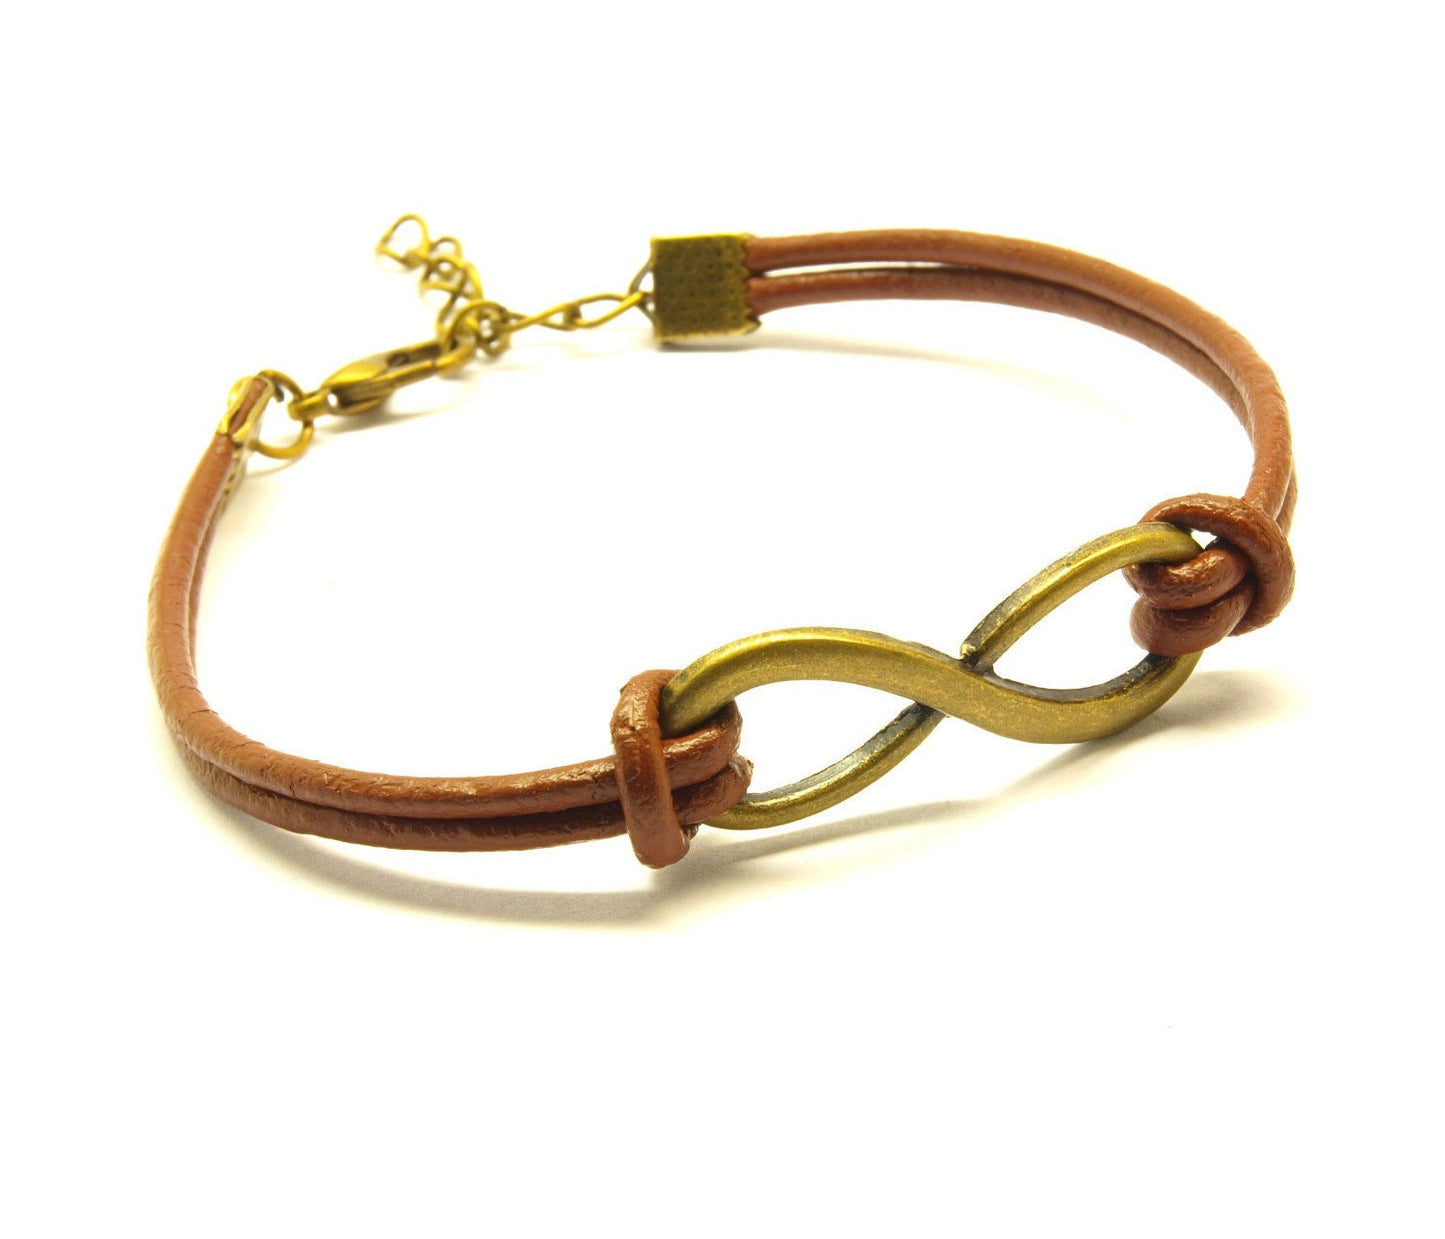 Leder Armband Infinity Unendlichkeit Armreif Farbe nach Wahl silbern bronze golden